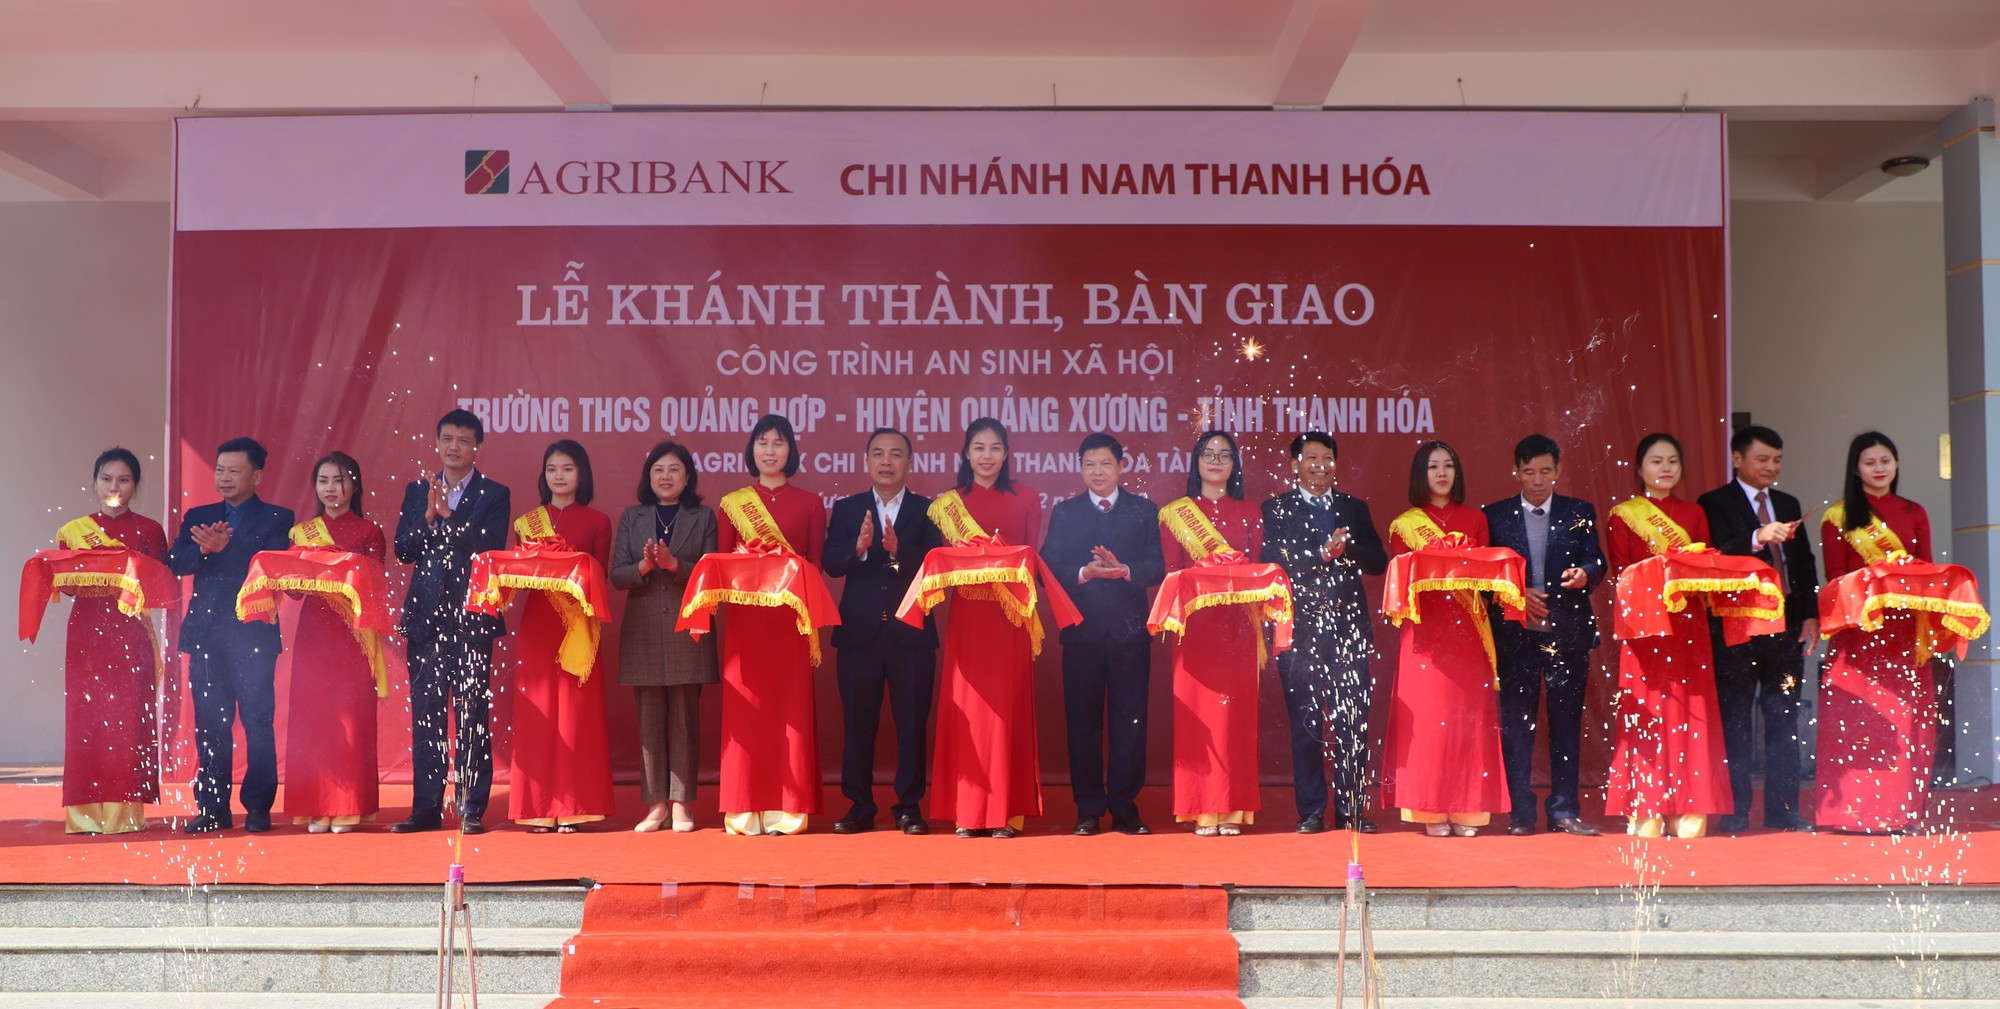 Agribank tài trợ 100% kinh phí xây dựng trường THCS Quảng Hợp, Quảng Xương, Thanh Hóa - Ảnh 3.